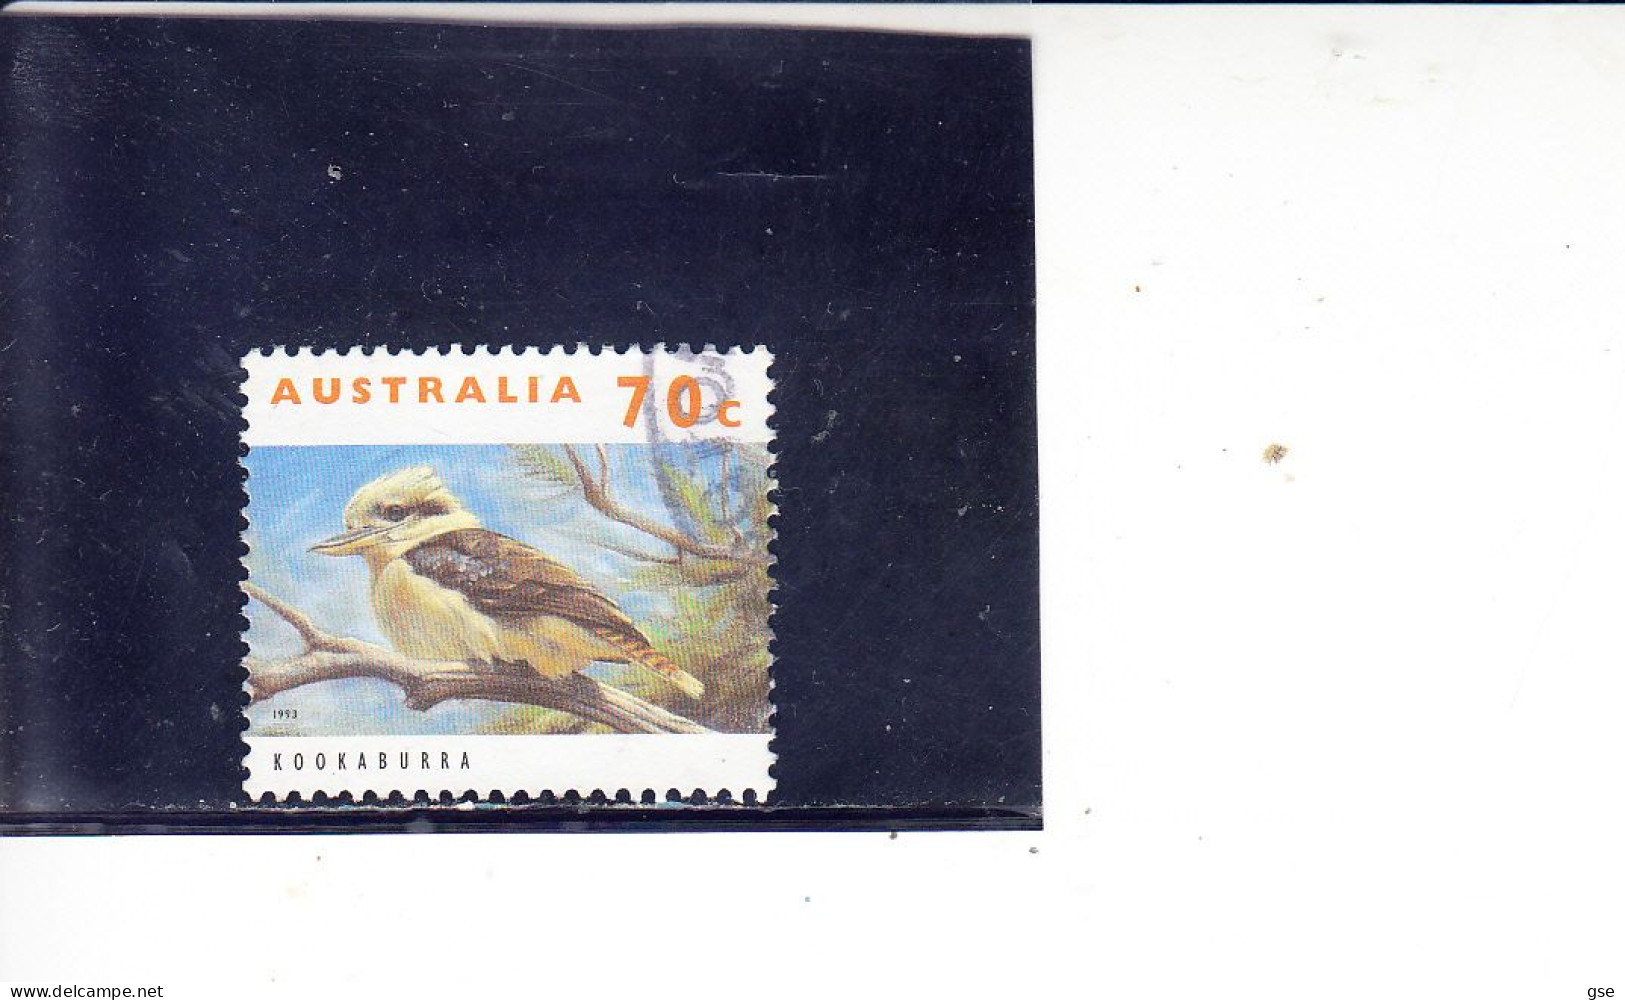 AUSTRALIA   1992 - SG  1366° - Uccelli - Cuco, Cuclillos